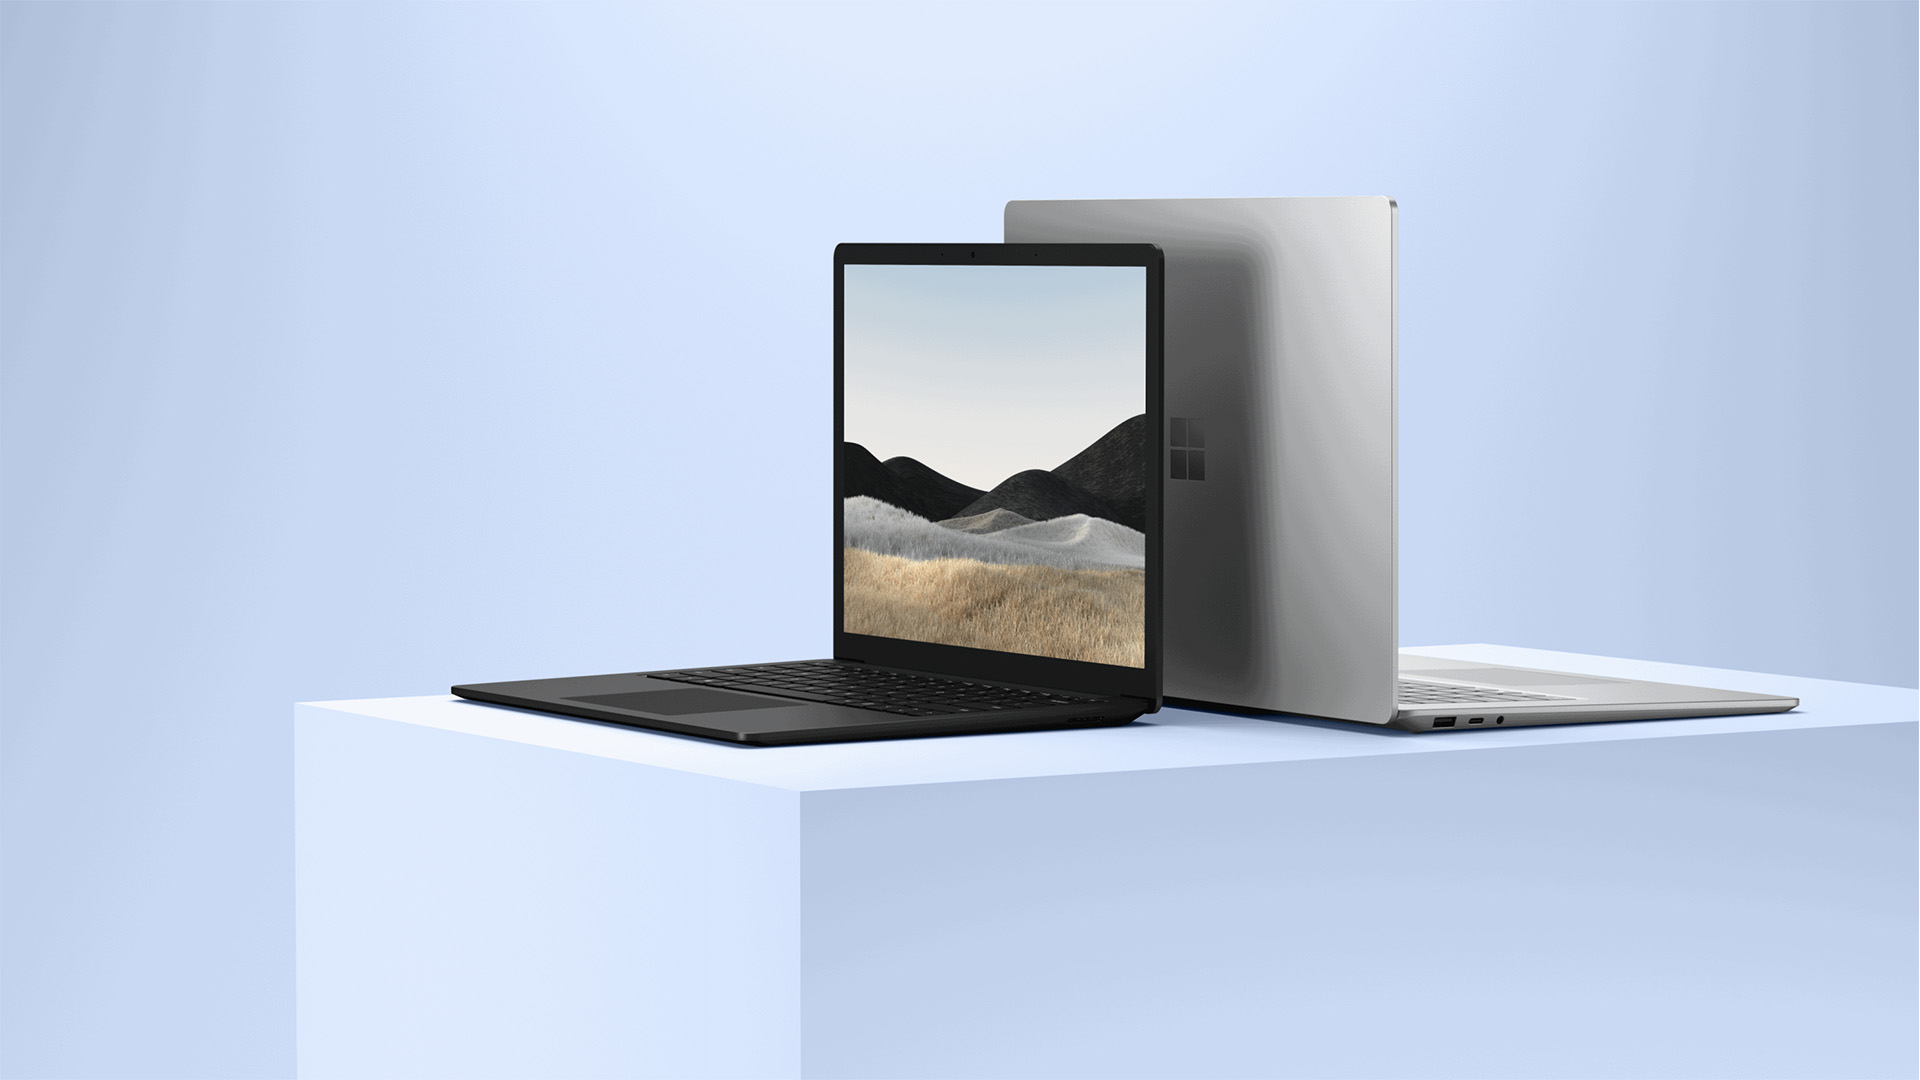 ไมโครซอฟท์ประกาศ พร้อมส่ง Surface Laptop 4 รุ่นใหม่ และอุปกรณ์เสริม กับตัวแทนจำหน่าย